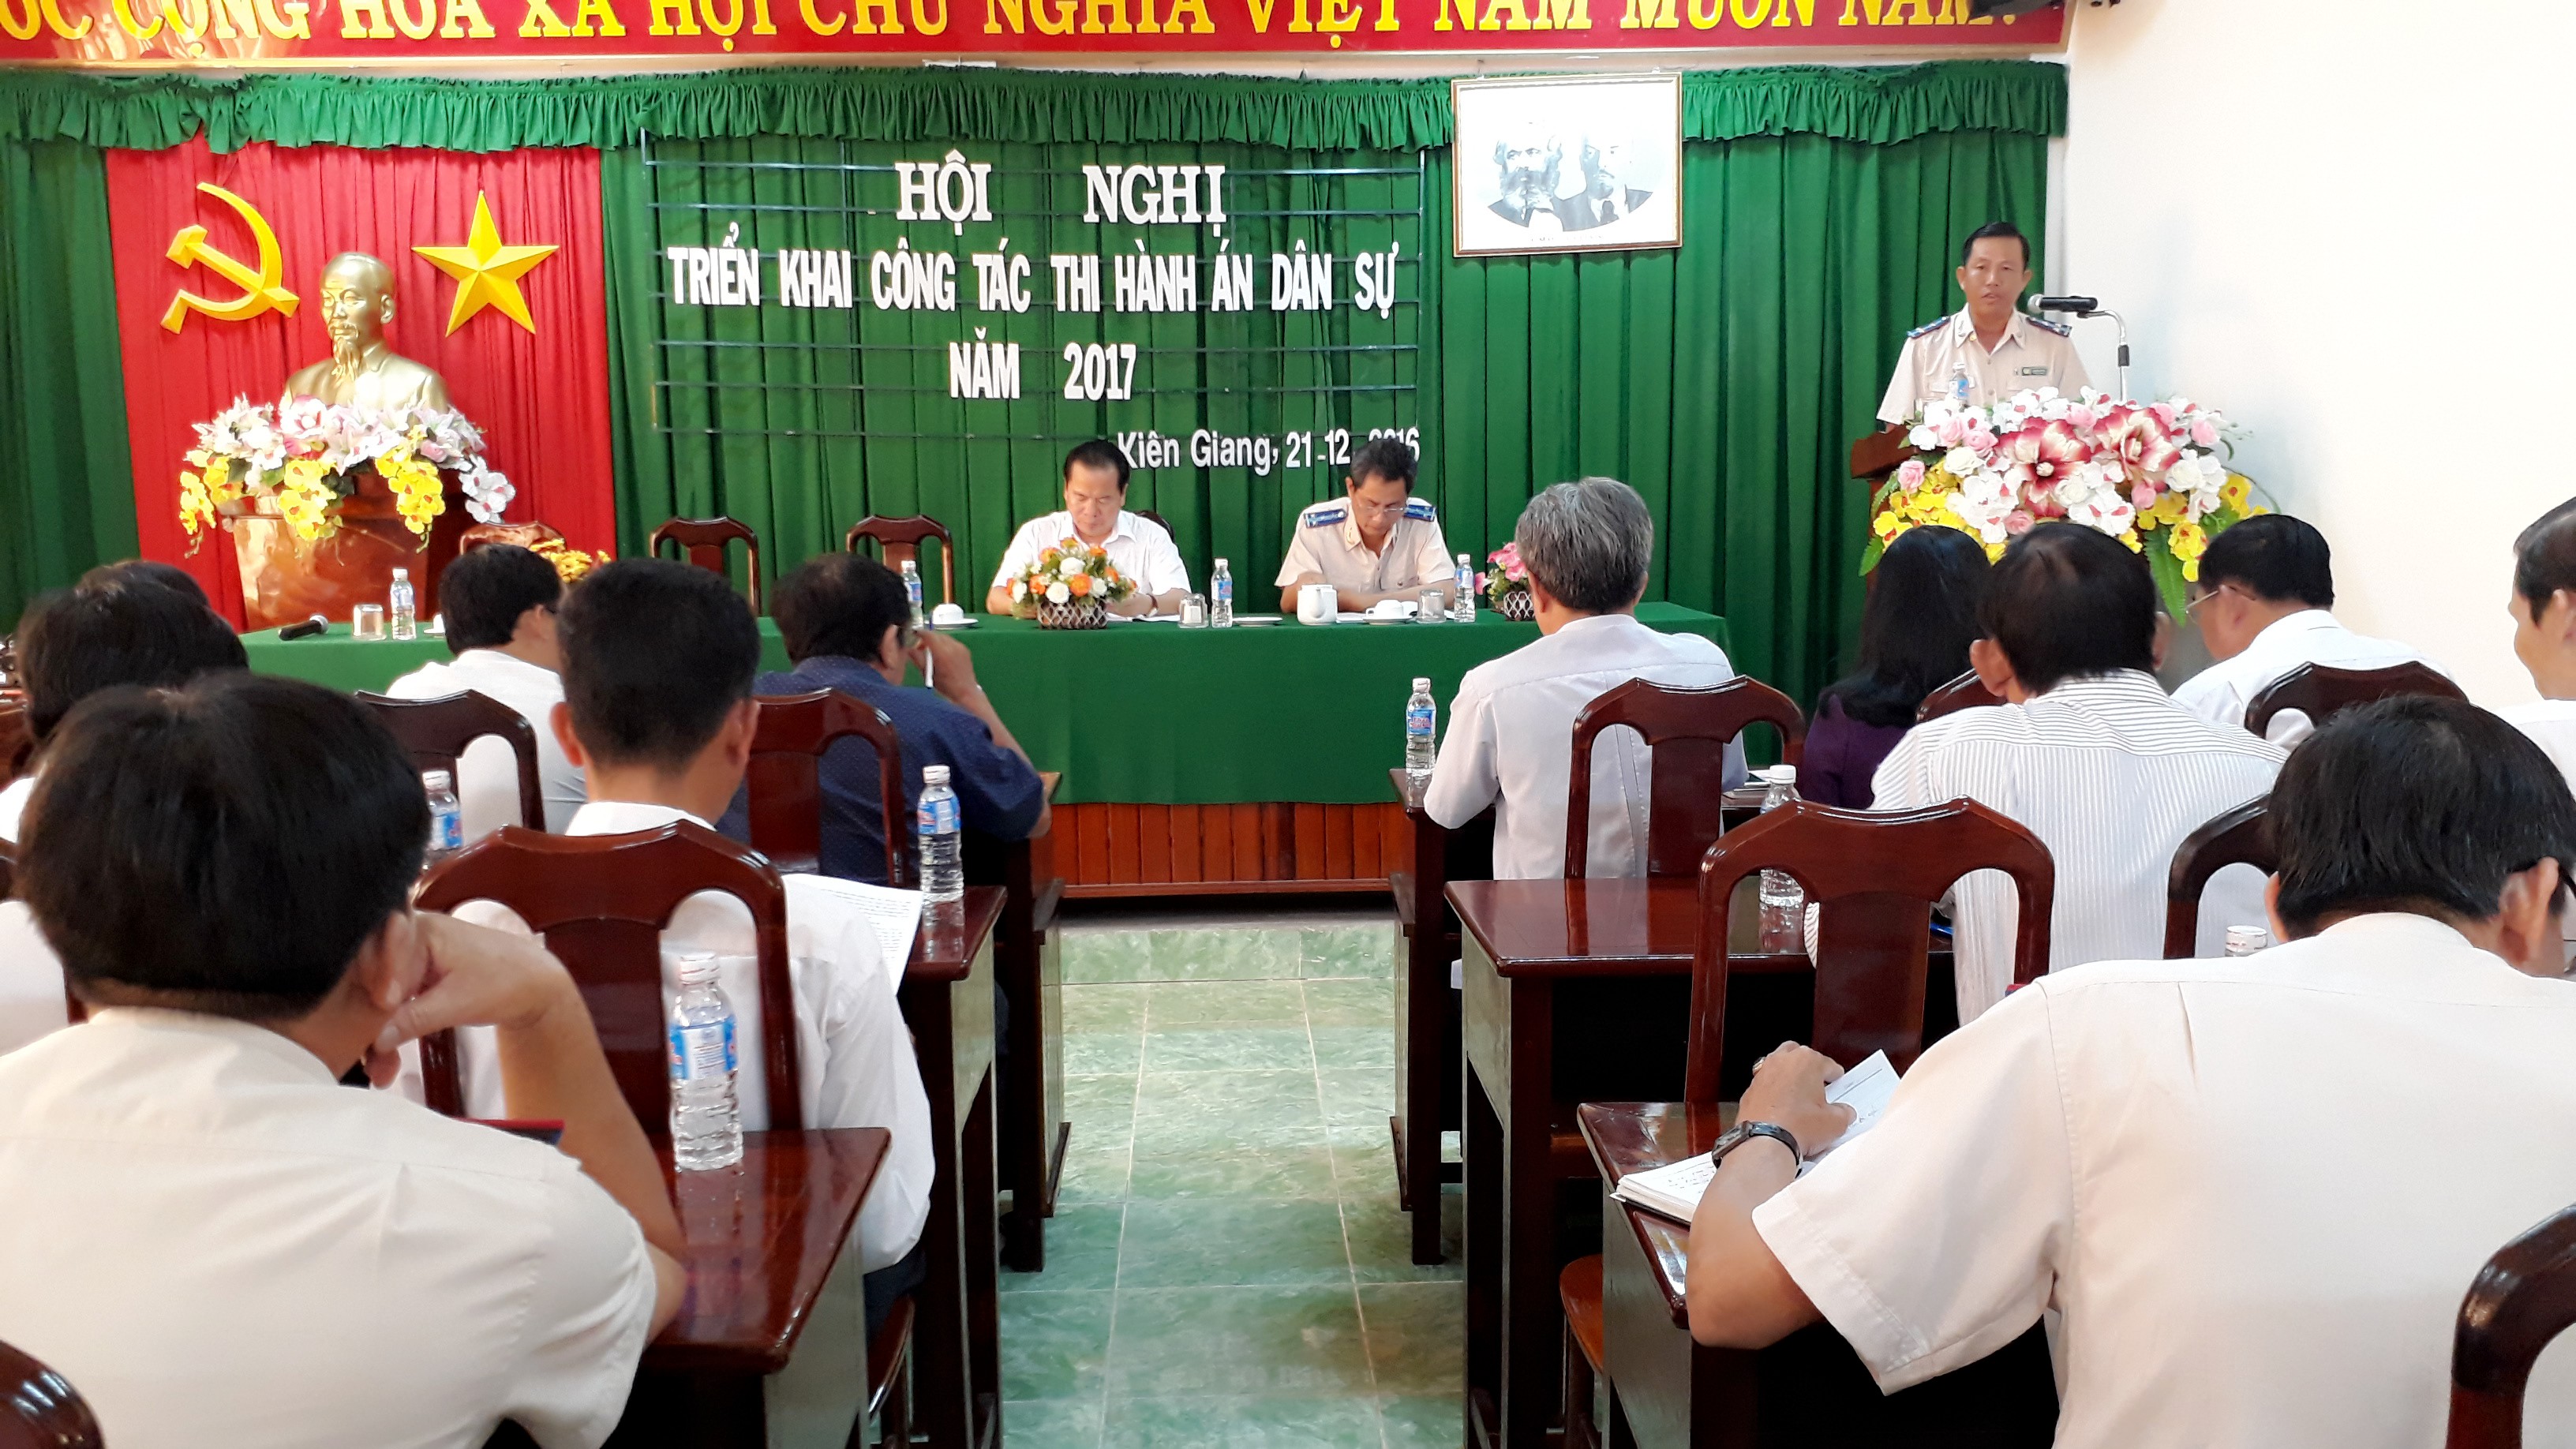 Cục Thi hành án dân sự tỉnh Kiên Giang  tổ chức Hội nghị tổng kết công tác năm 2016 và triển khai Kế hoạch công tác năm 2017